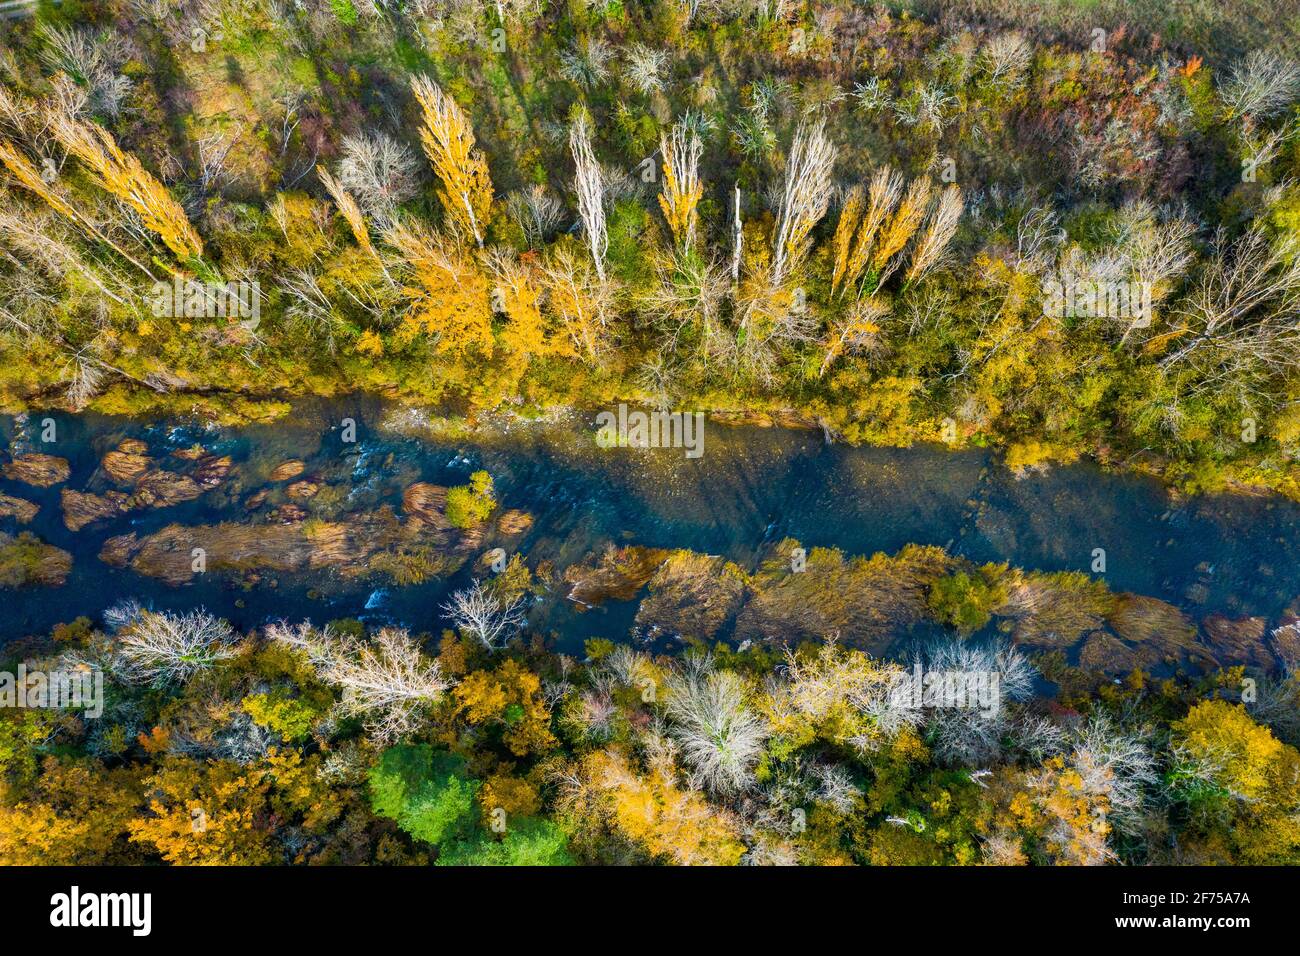 Vue aérienne d'une rivière avec végétation riveraine en automne. Banque D'Images